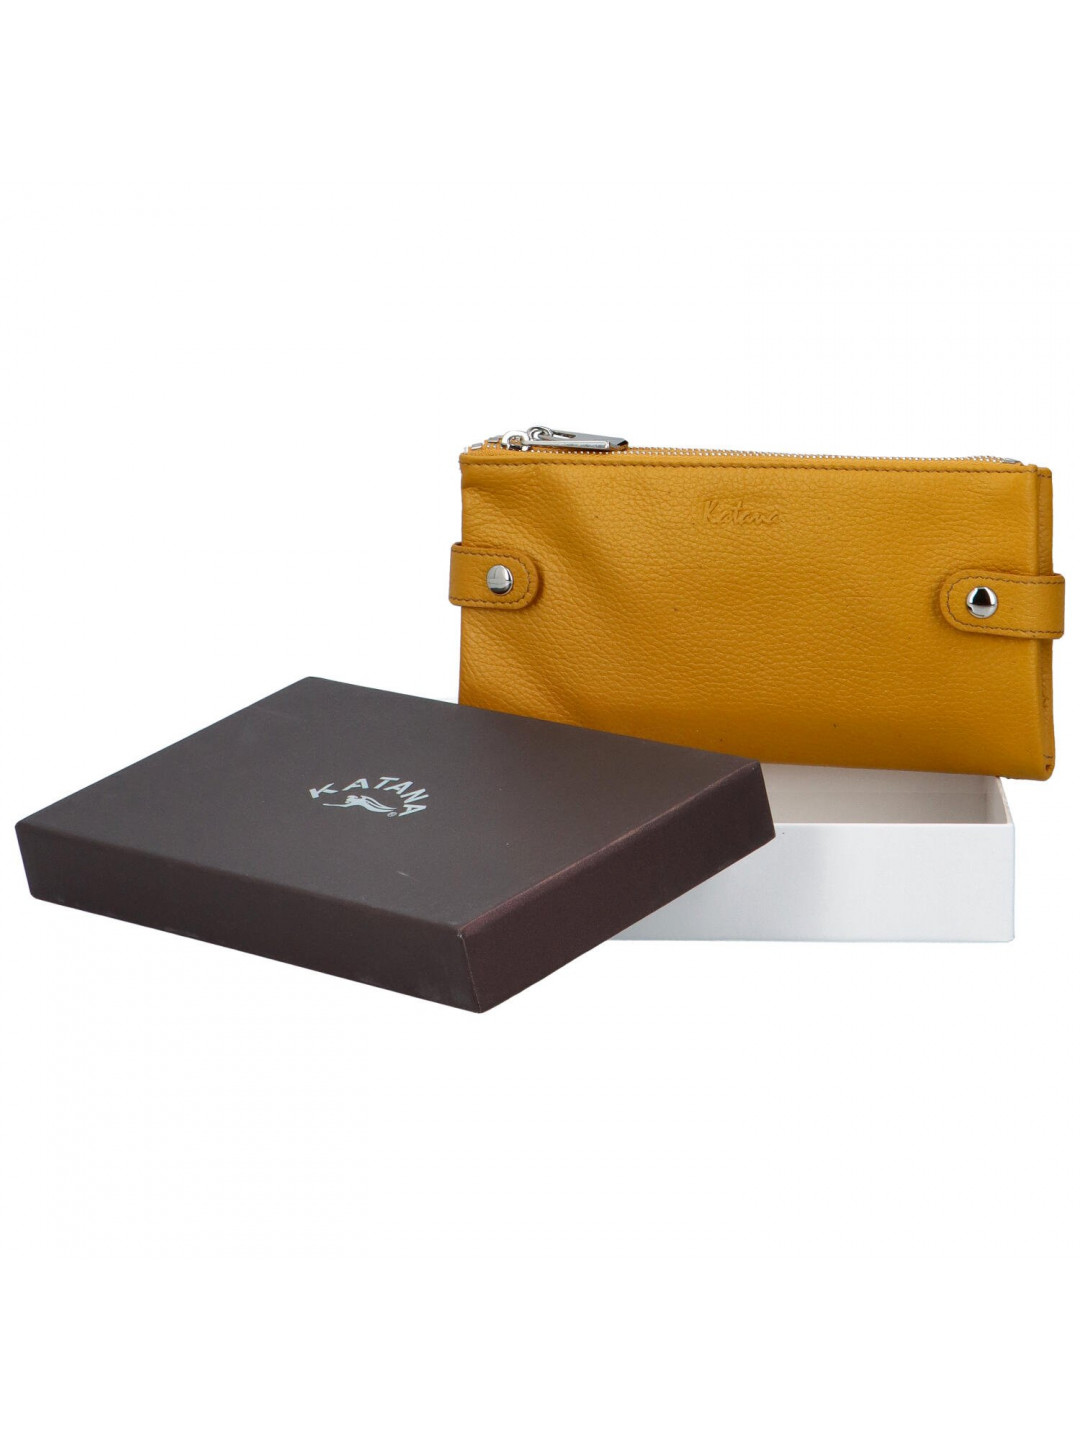 Moderní dámská kožená peněženka Sildano Katana žlutá